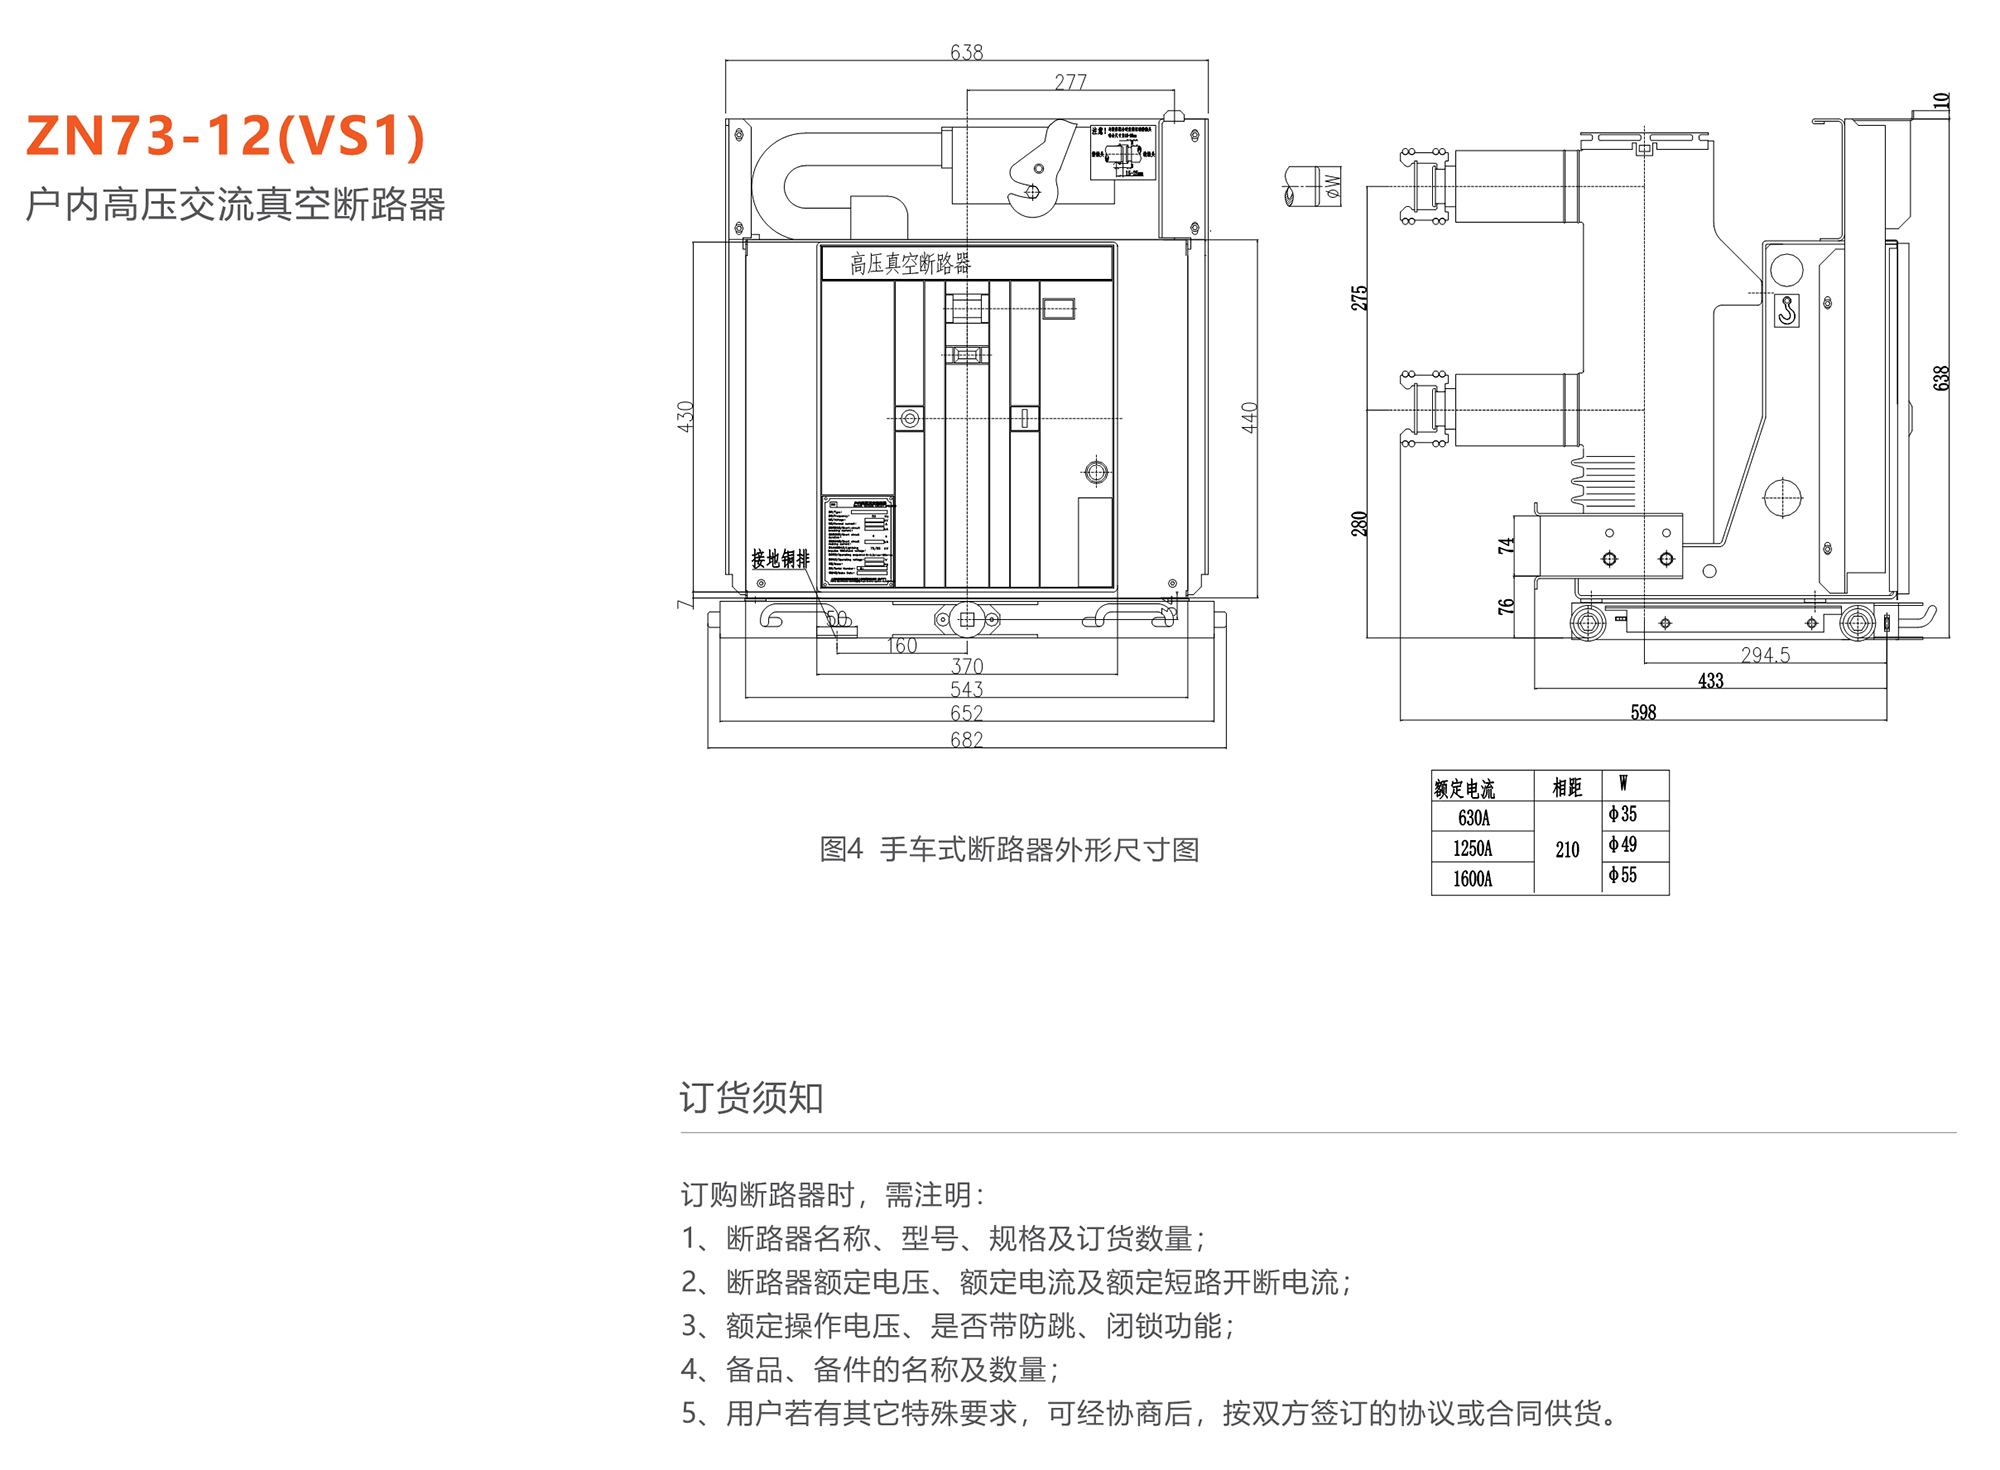 44118太阳成城集团 ZN73-12(VS1)型户内高压交流真空断路器